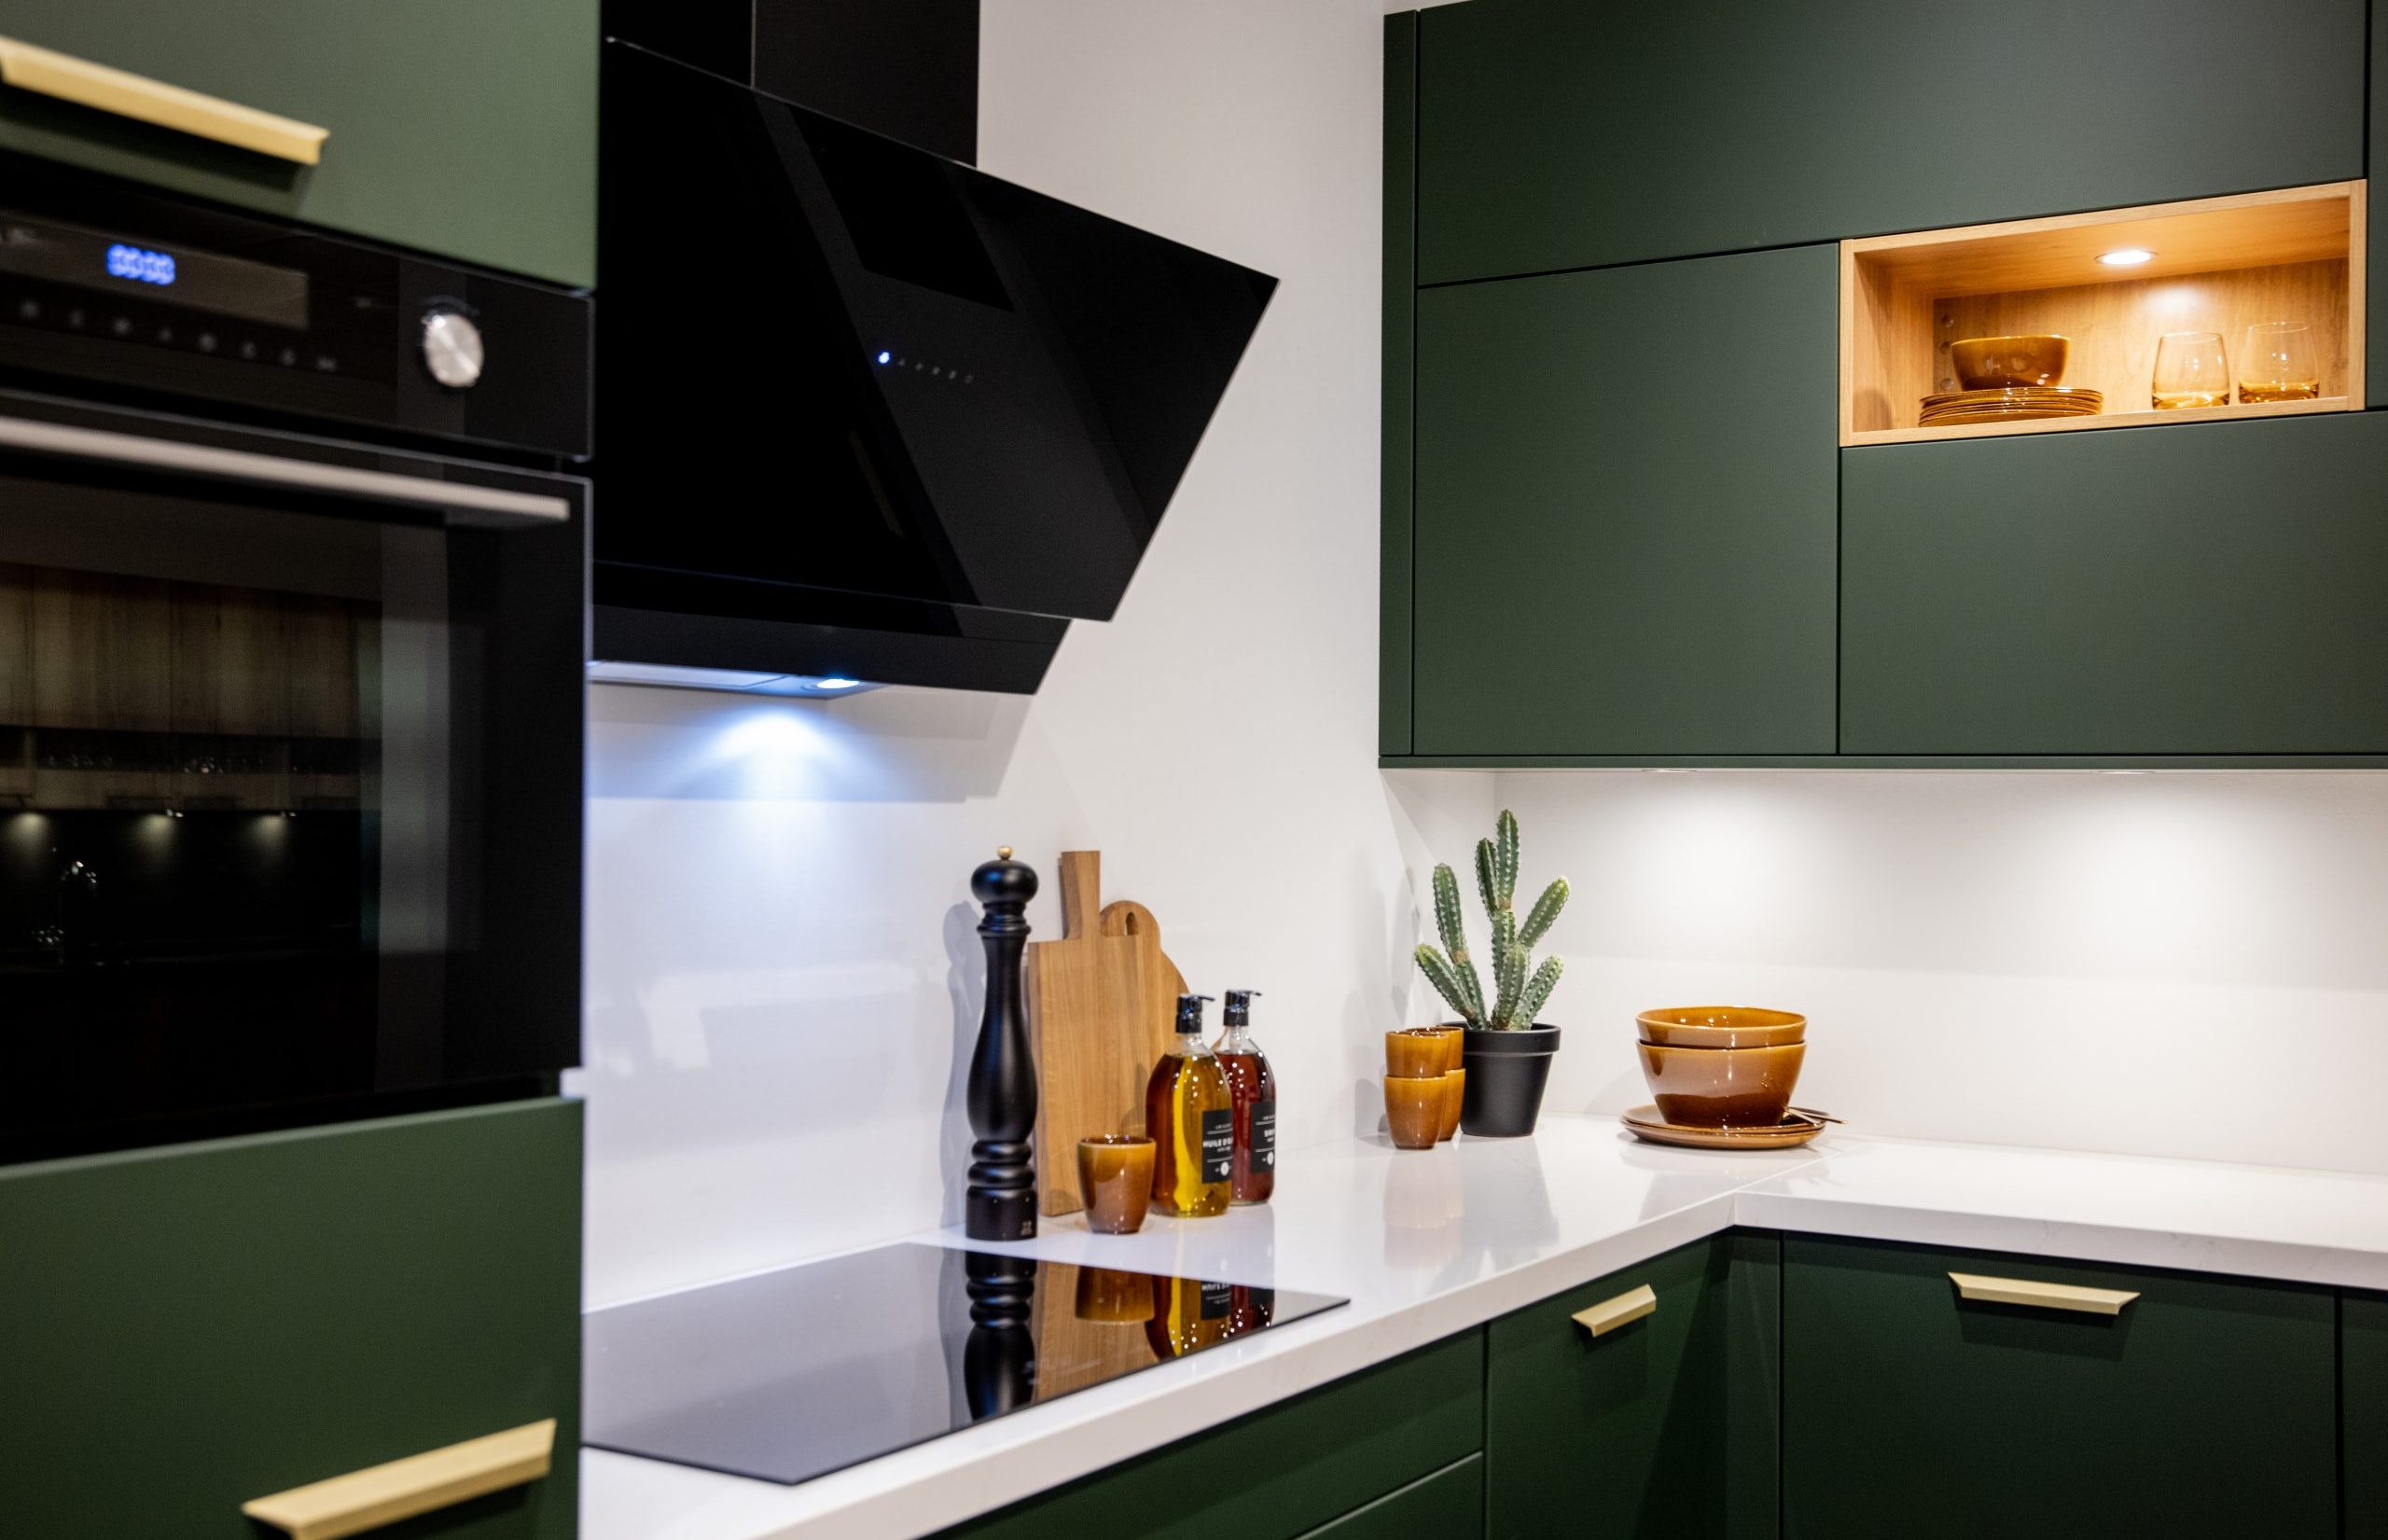 Het witte composiet werkblad vormt een mooi contrast met de mat groene fronten - Bemmel & Kroon keukens